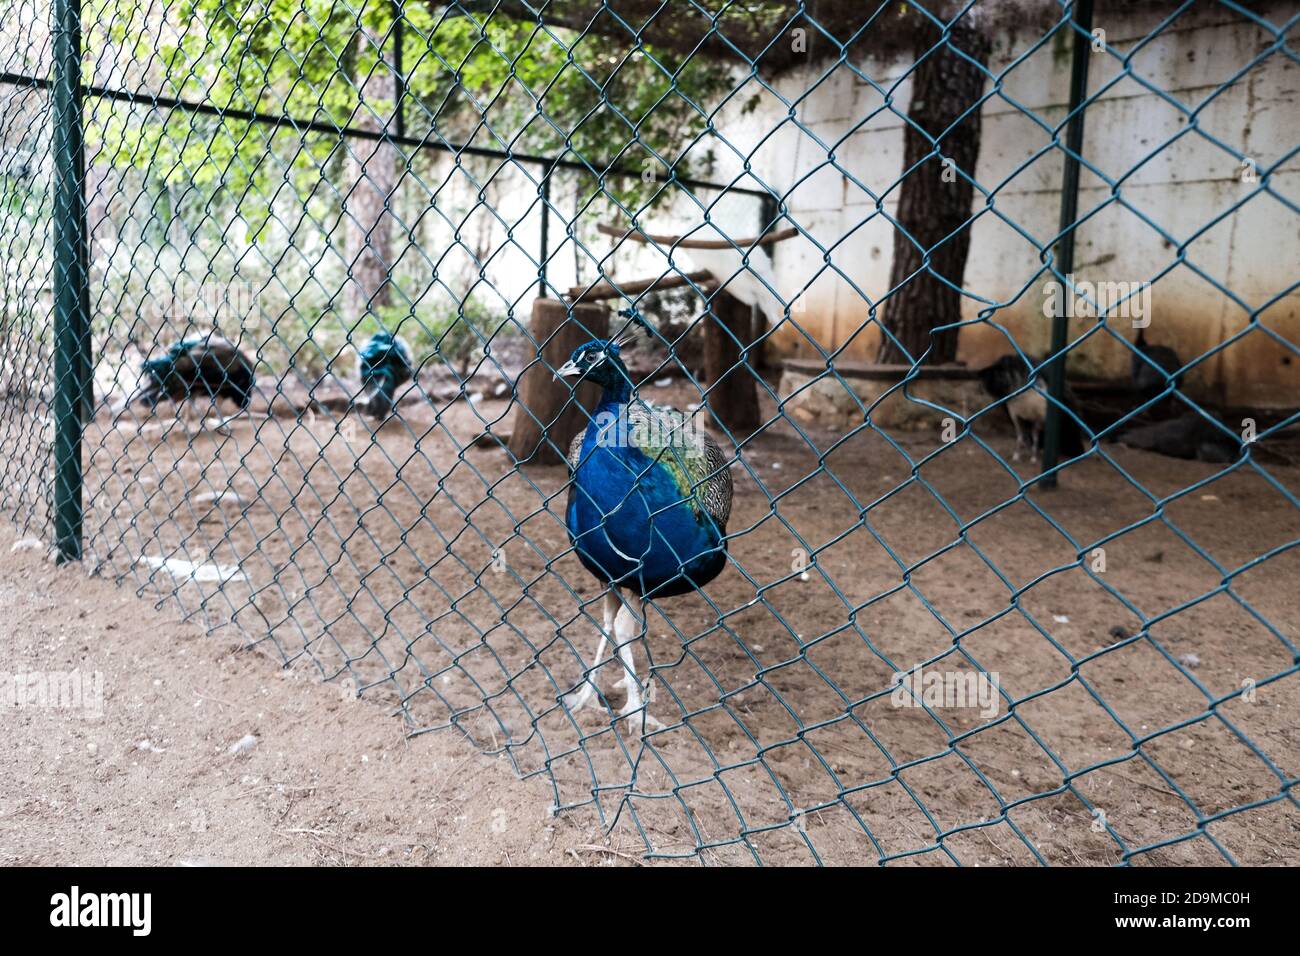 Paon bleu vif marchant dans un zoo derrière la clôture. Oiseaux sauvages en captivité pour le divertissement touristique. Magnifique paon coloré tenu captif Banque D'Images